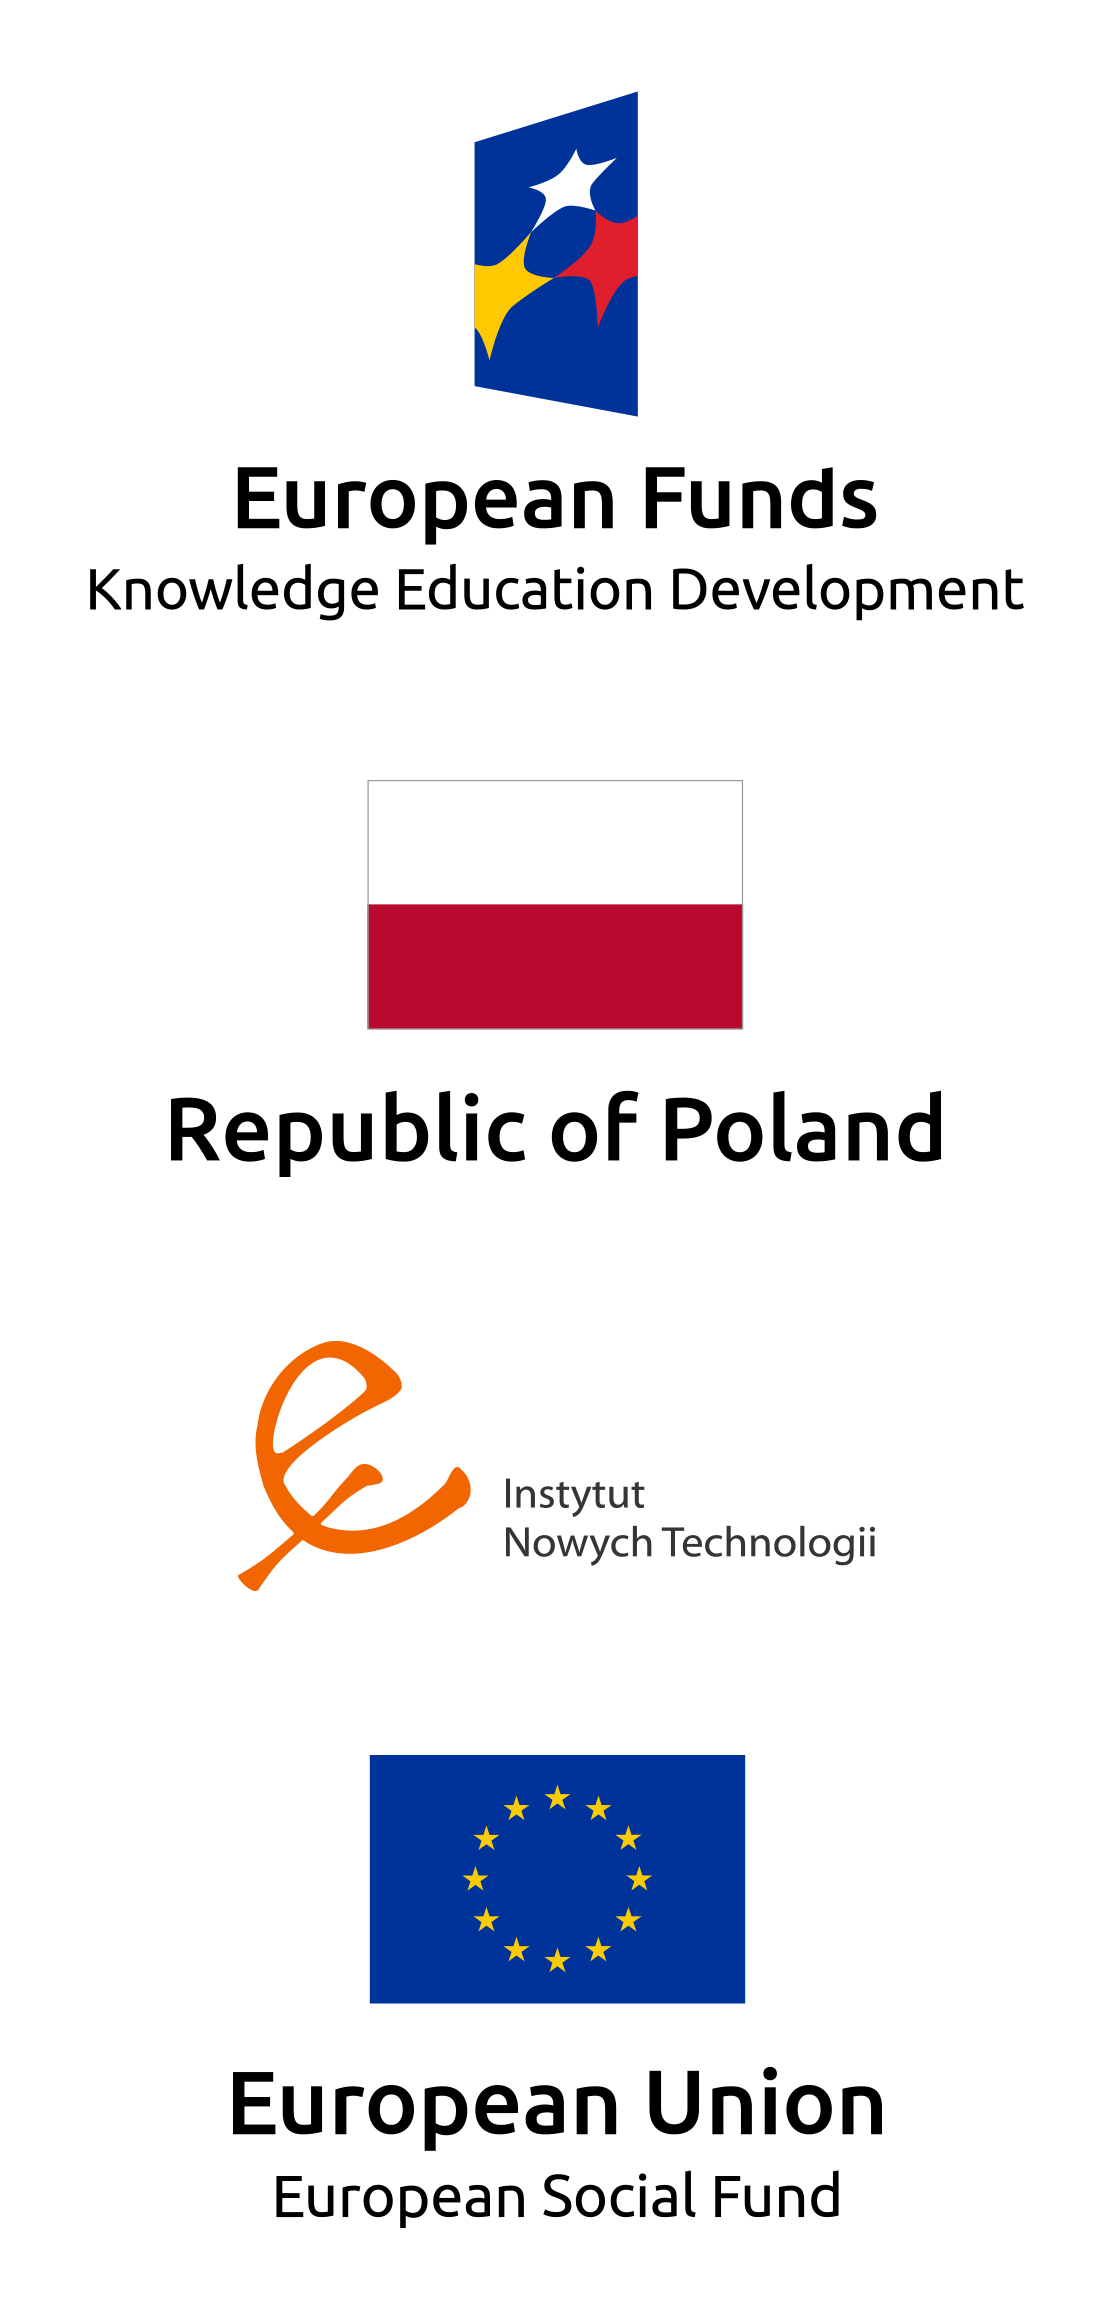 Fundusze Europejskie Wiedza Edukacja Rozwój; Rzeczpospolita Polska; Instytut Nowych Technologii; Unia Europejska - Europejski Fundusz Społeczny